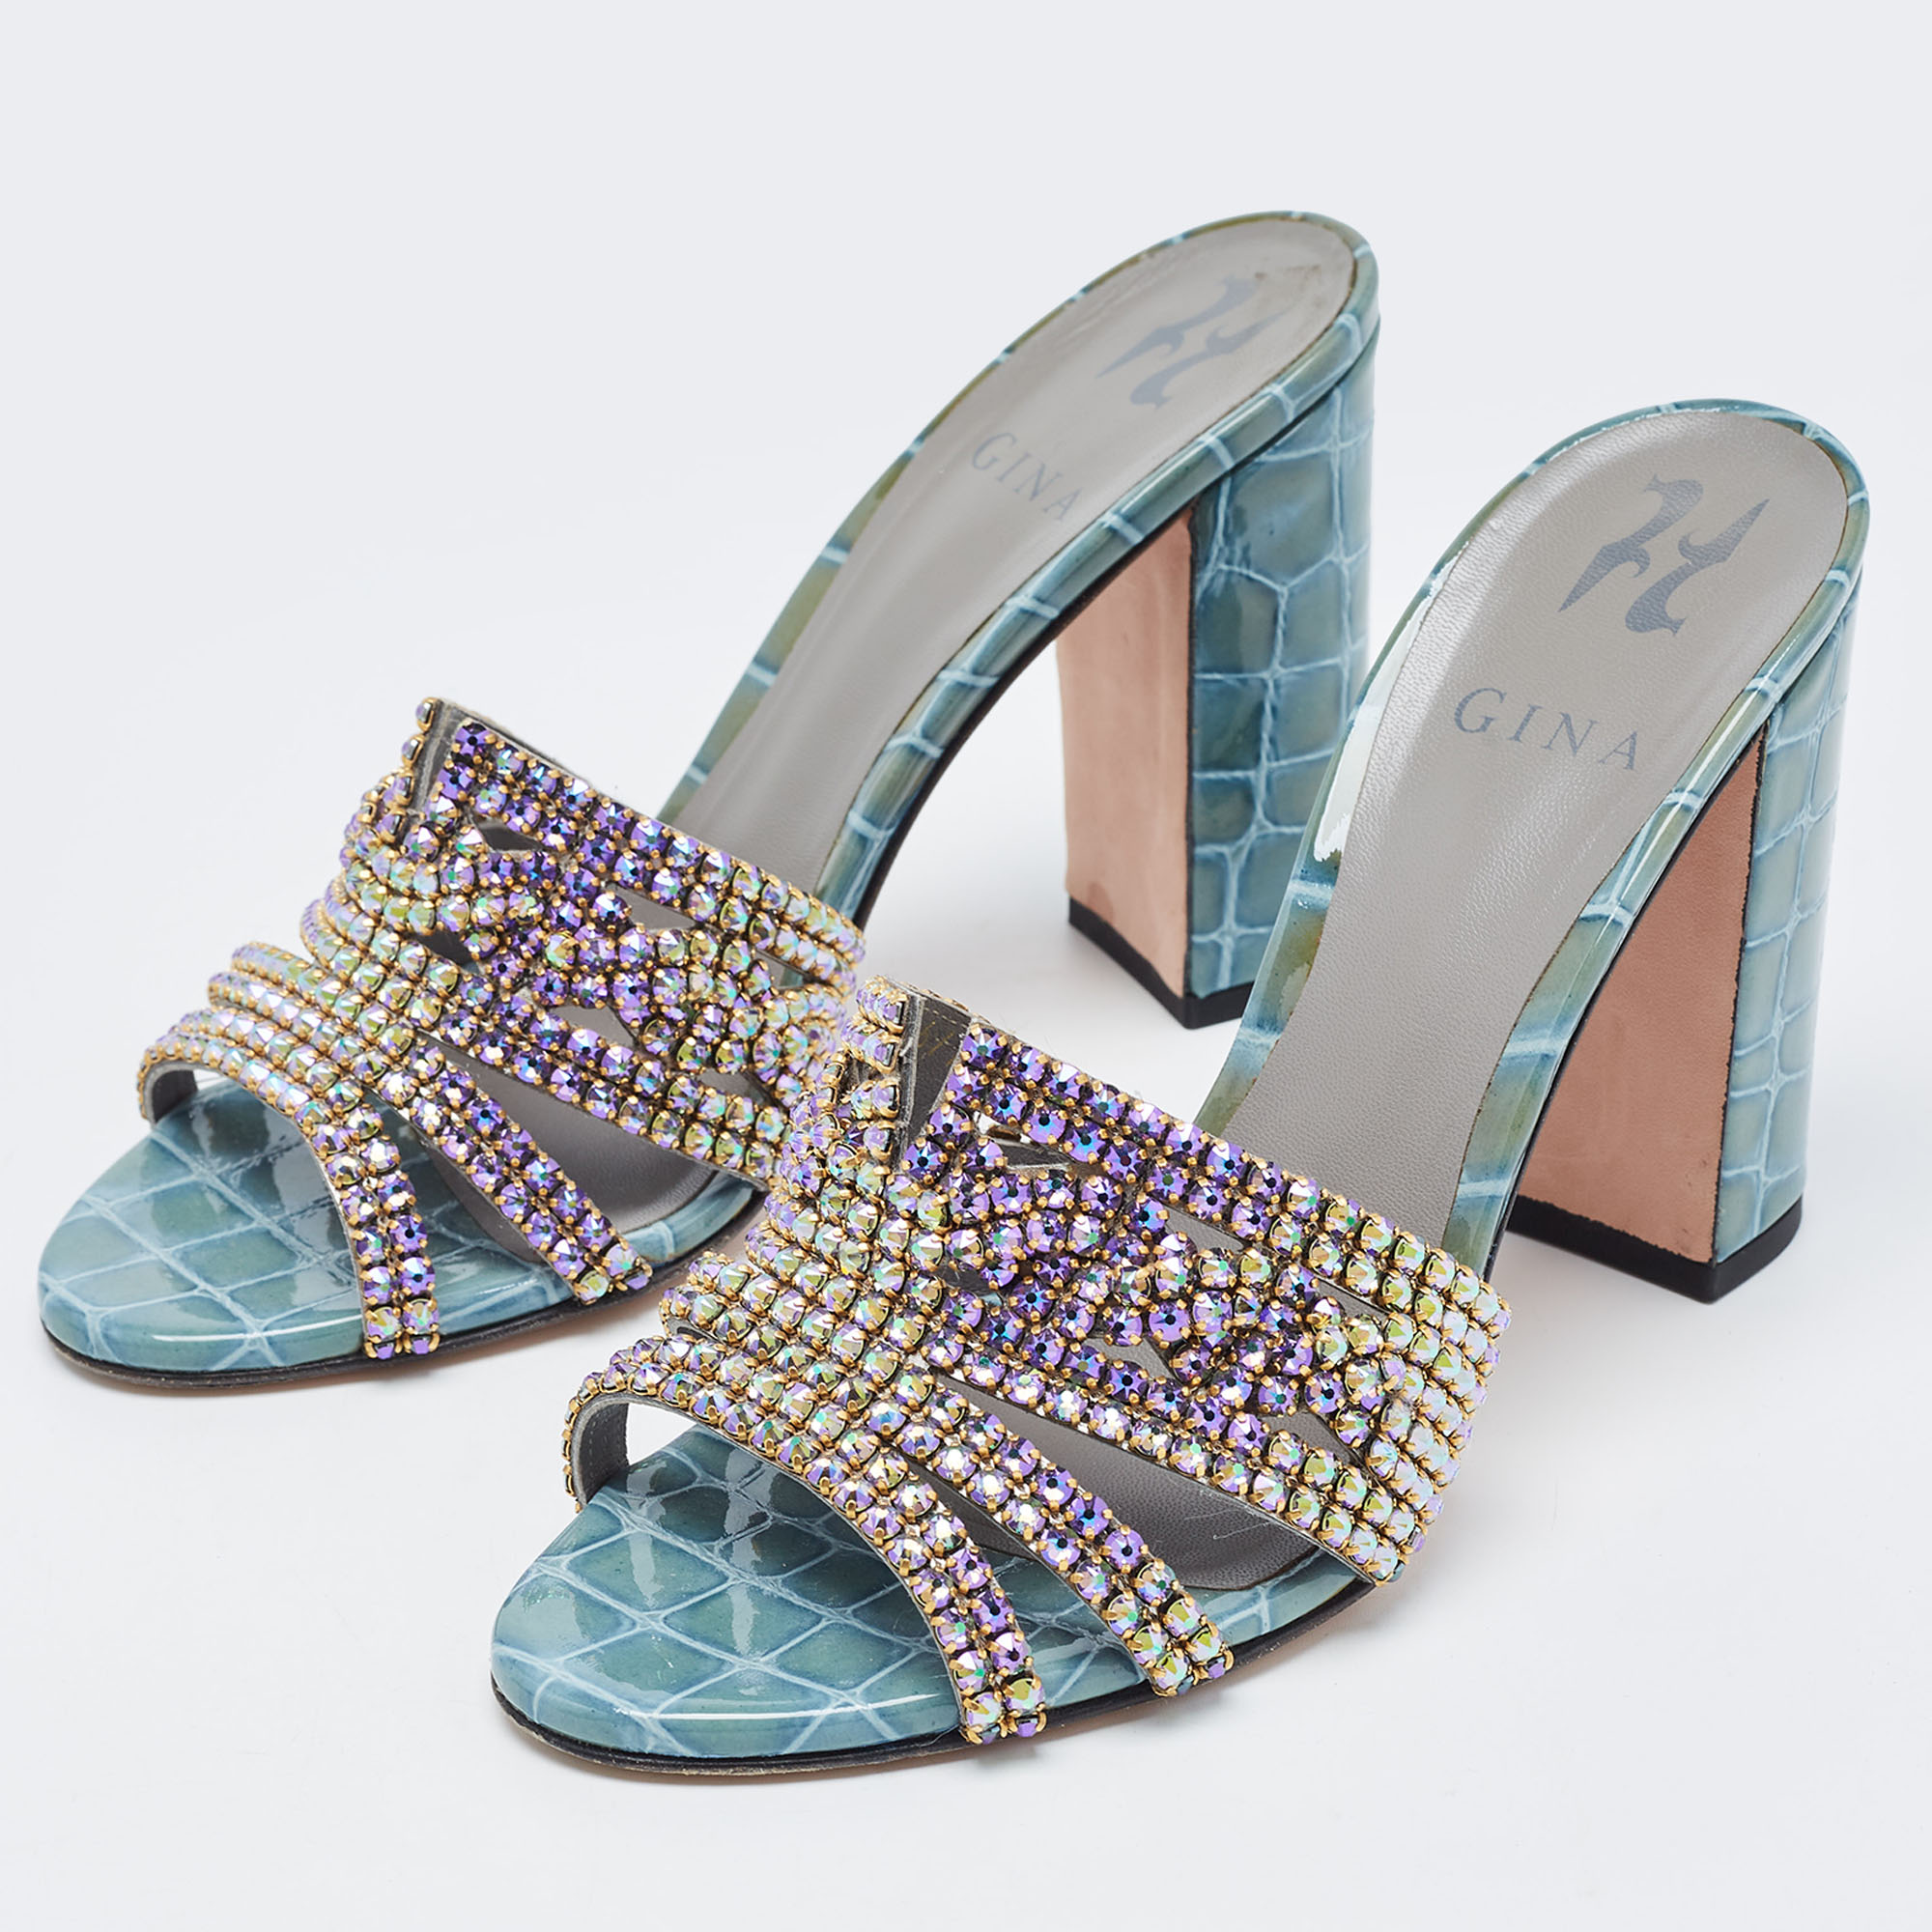 

Gina Green Croc Embossed Patent Leather Crystal Embellished Slide Sandals Size